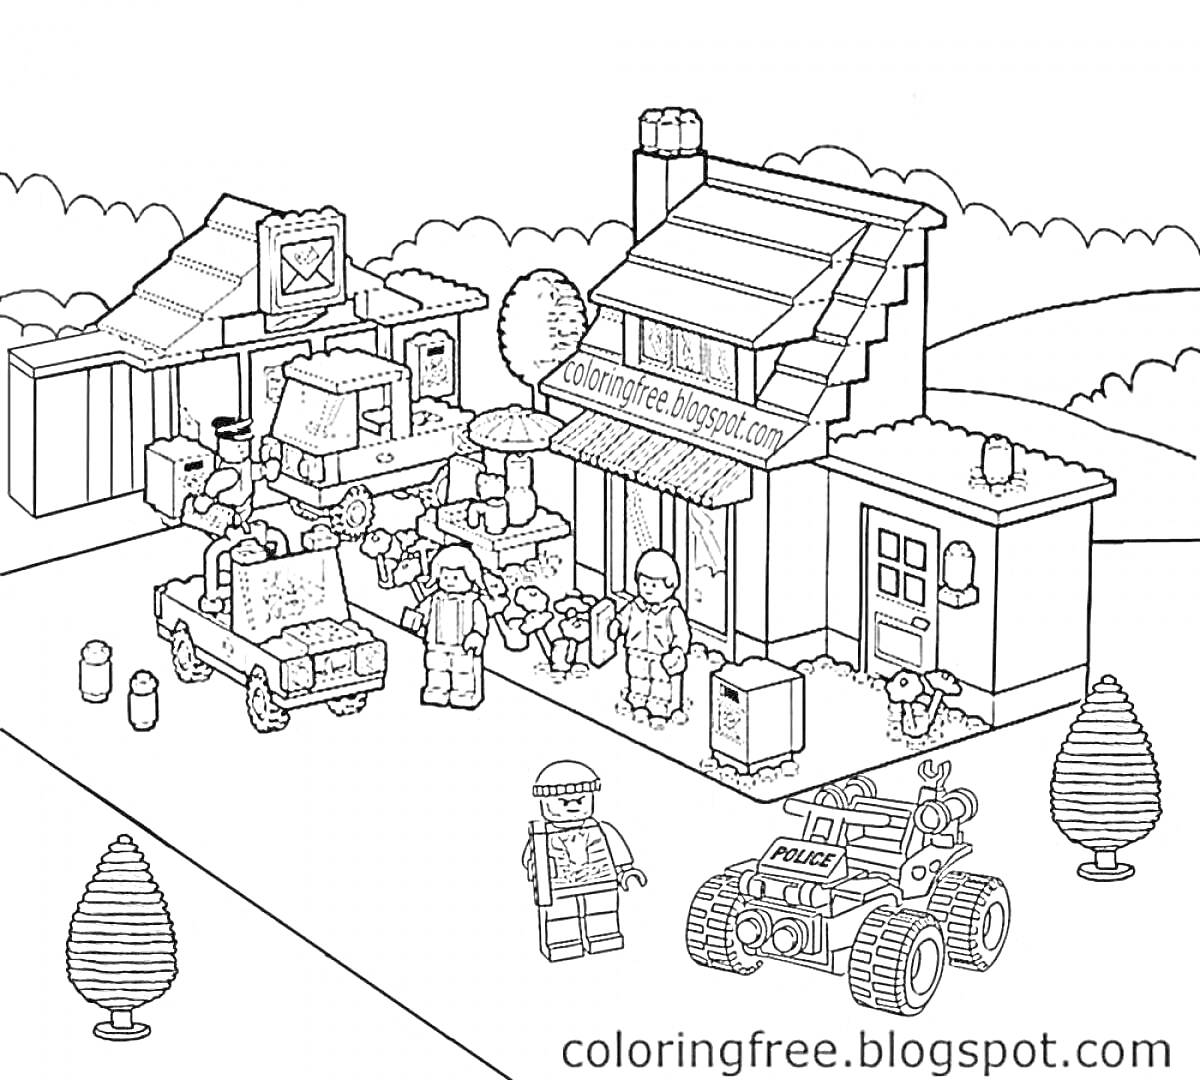 Раскраска Лего город: дом, магазин, грузовик, джип, 6 минифигурок, щенок, деревья, мусорные баки